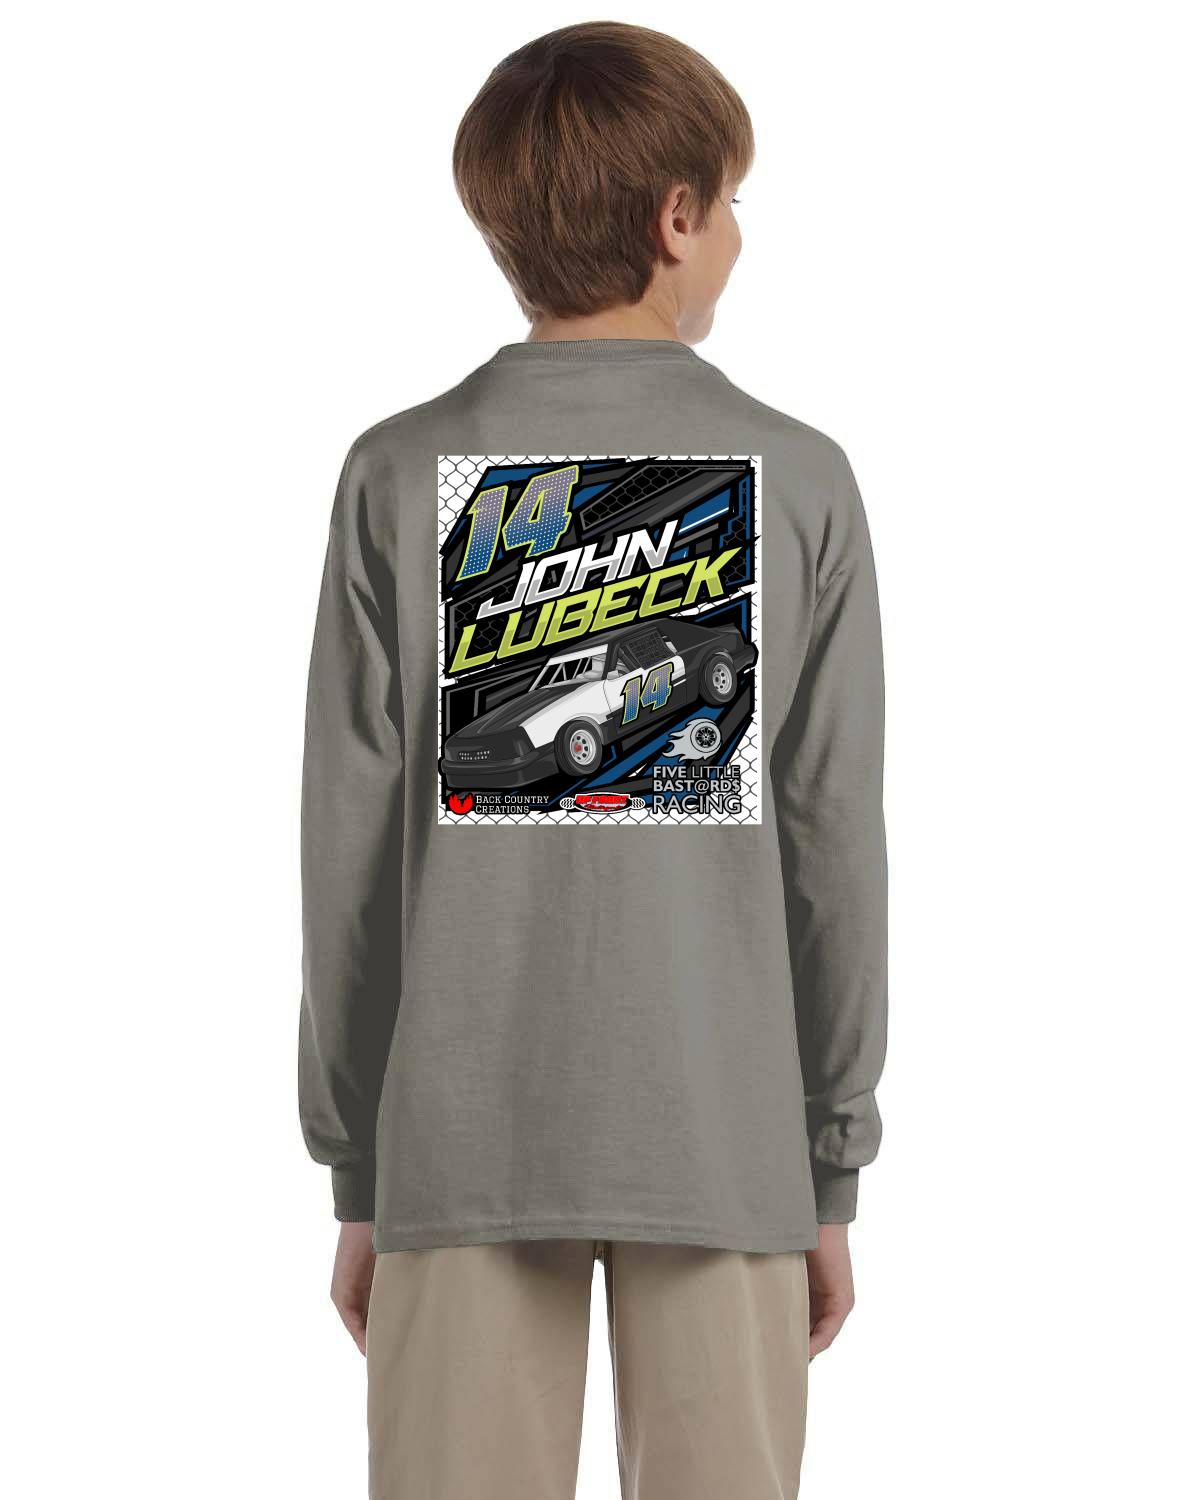 John Lubeck / Upfront Motorsports Youth Long-Sleeve T-Shirt